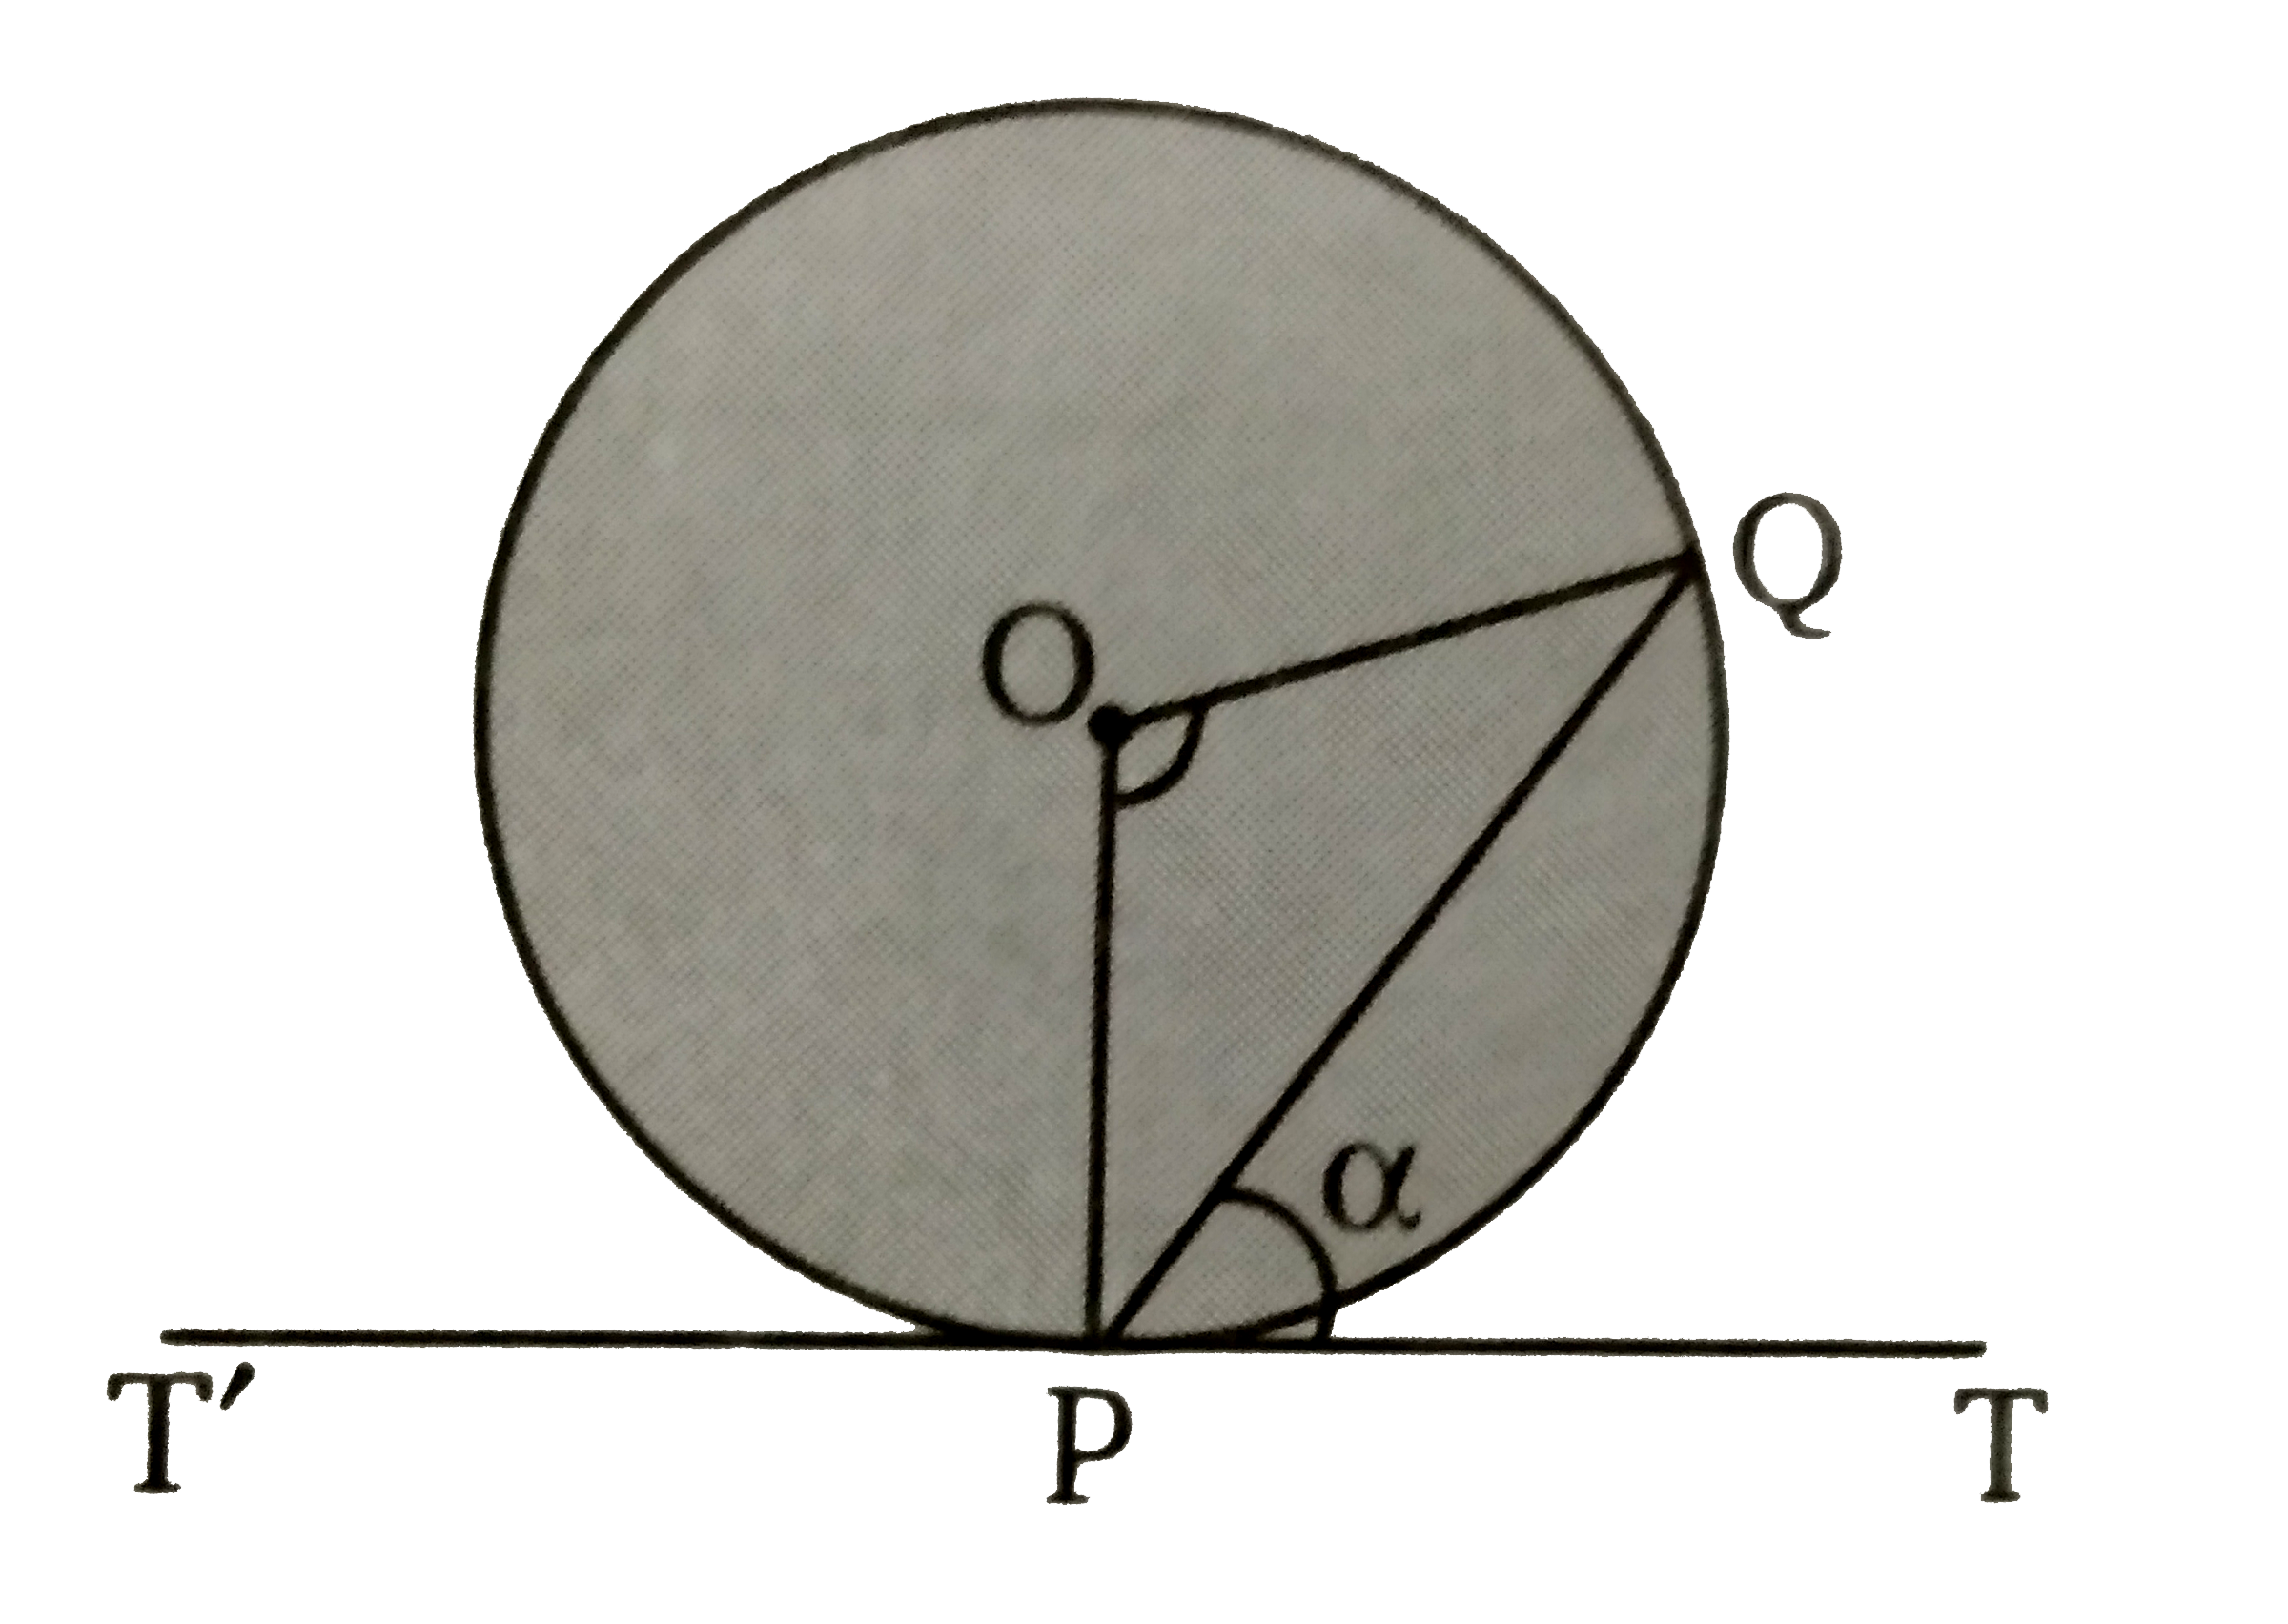 दिये गये चित्र में,  O वृत्त का केन्द्र है। वृत्त के बिन्दु P  पर एक स्पर्शी T'PT  खींची जाती है। जो कि केन्द्र   पर  angle POQ   बनाती है यदि angle QPT = alpha   तब angle POQ  का मान ज्ञात कीजिए ।